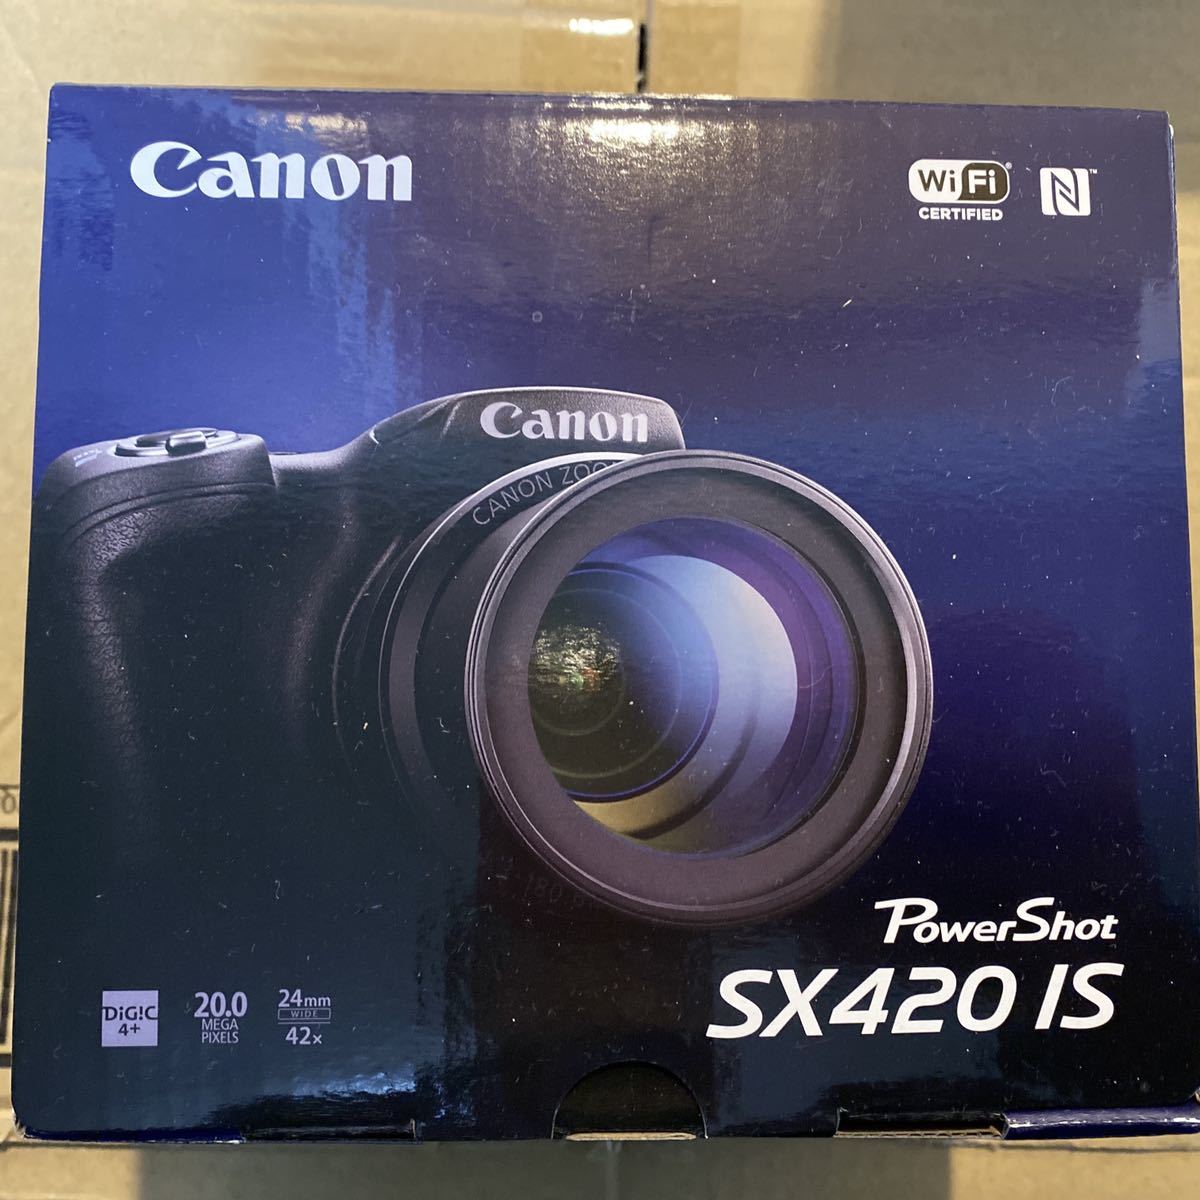 数量限定価格!! 新品未使用 Canon SX420IS パワーショット キャノン PowerShot - キヤノン -  www.parqueluz.com